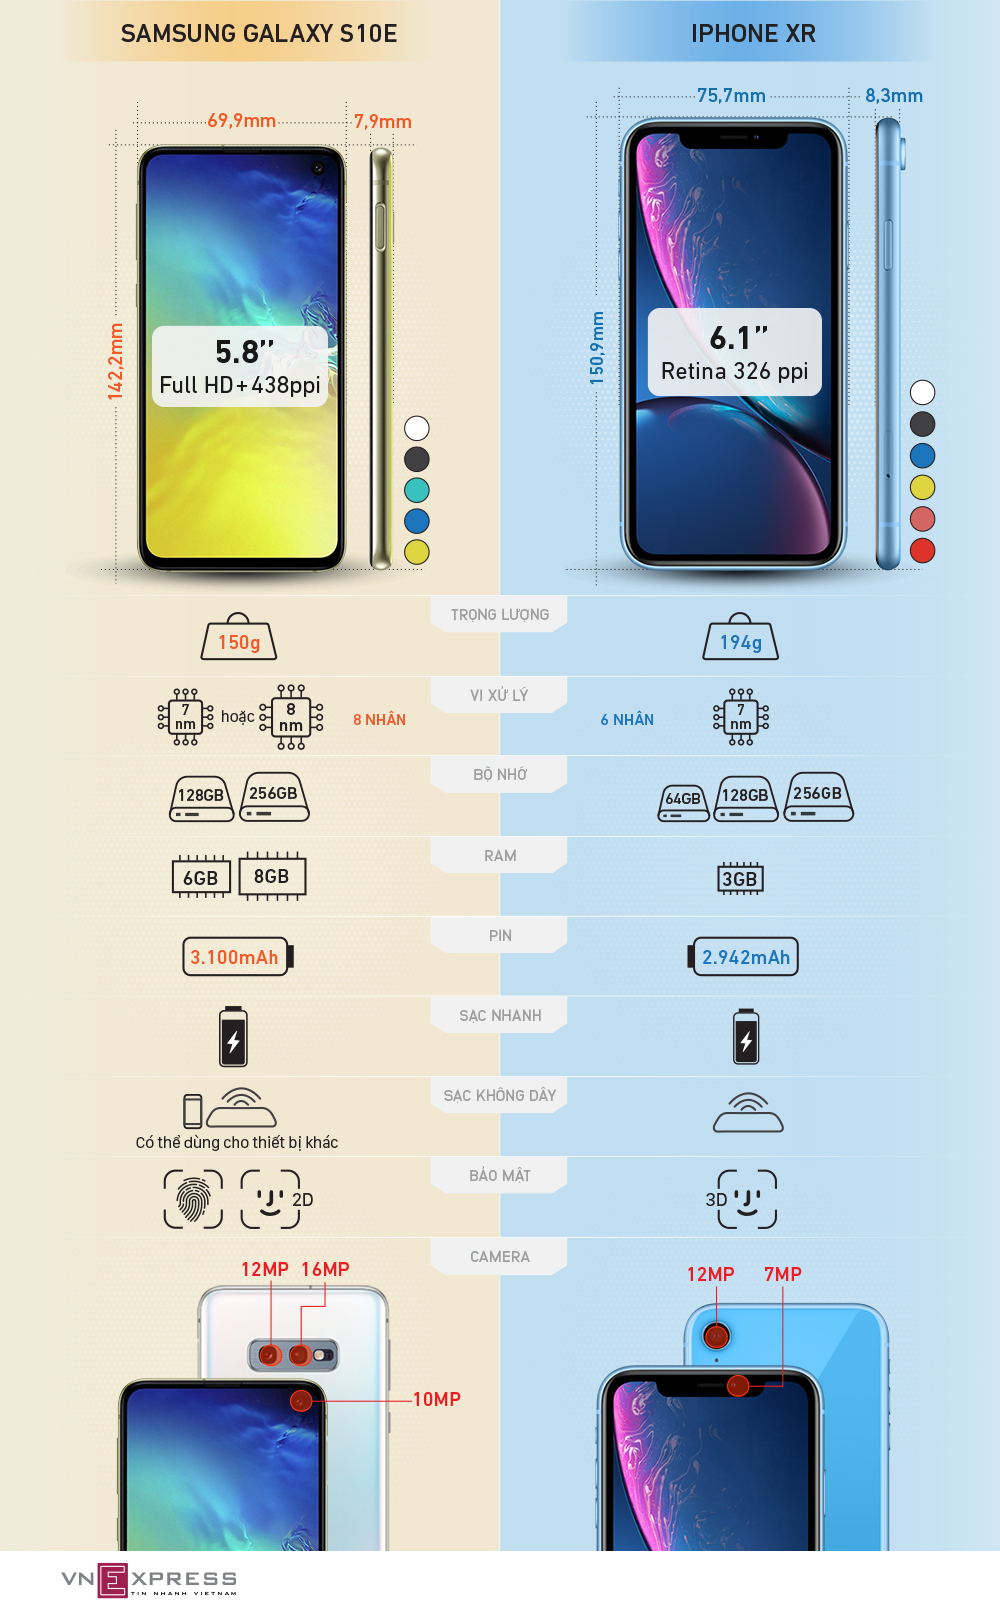 Galaxy S10e đọ thông số iPhone XR